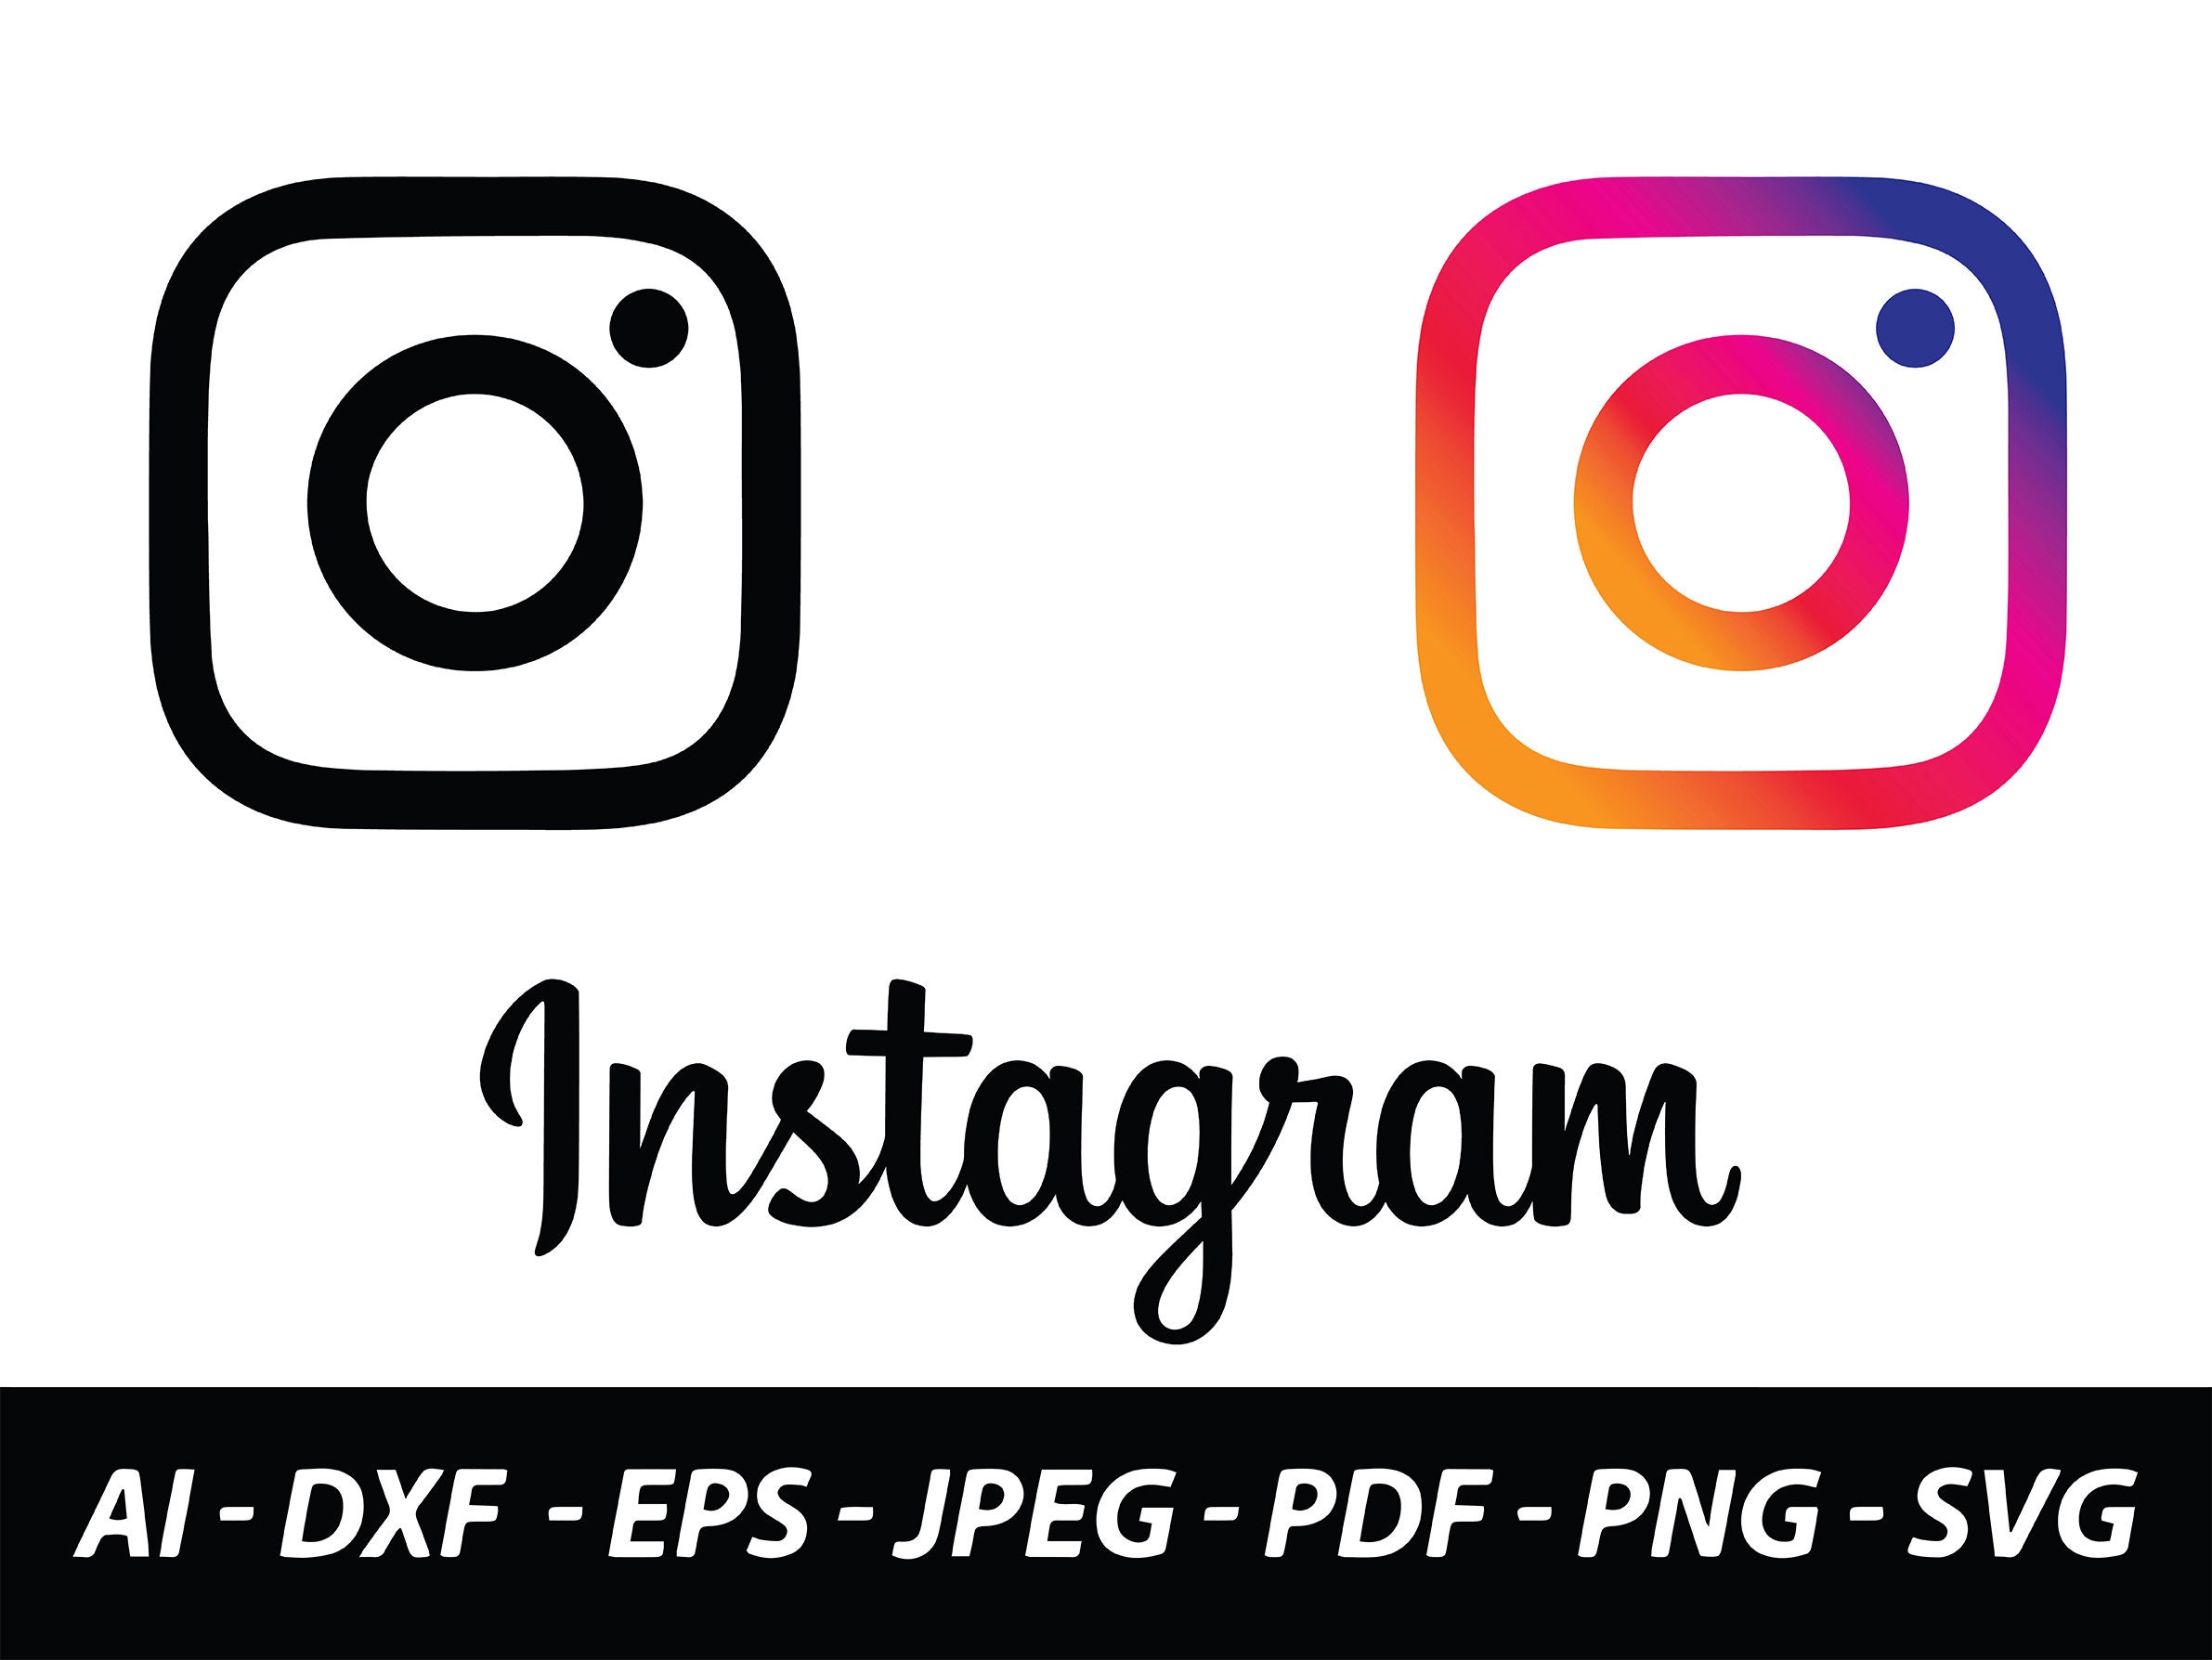 Instagram logo Wallpapers Download | MobCup